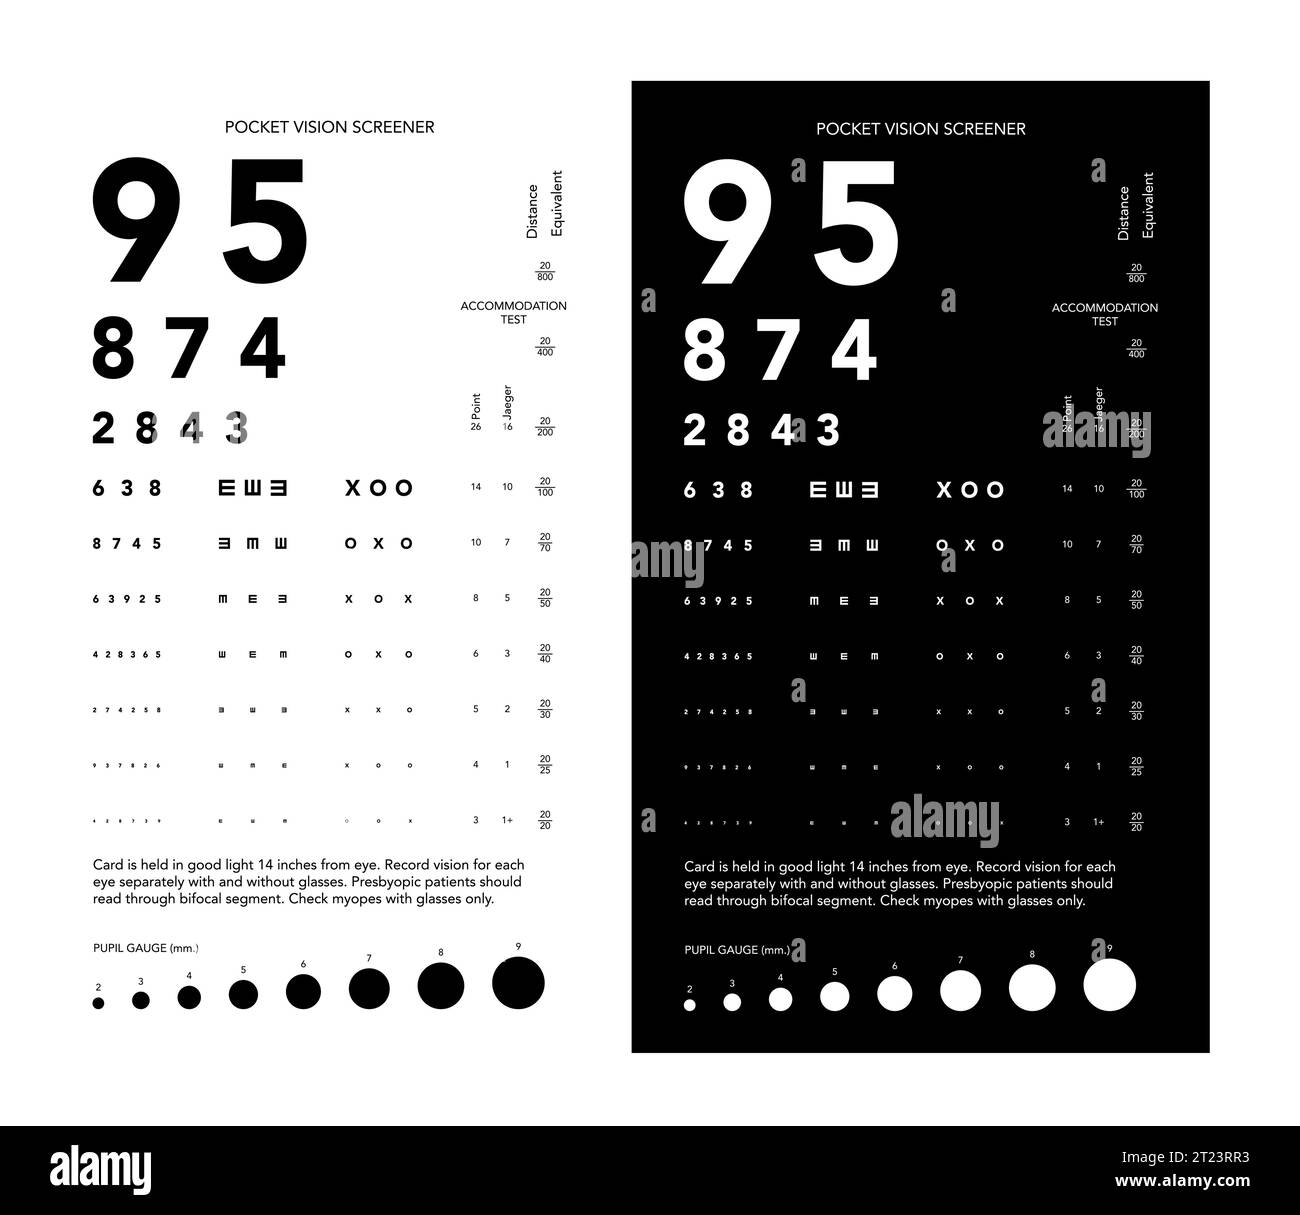 Rosenbaum Pocket Vision Screener Eye test Chart illustrazione medica con numeri. Stile di schizzo vettoriale di linea isolato su sfondo bianco e nero. Pannello ottico oftalmico per esame Illustrazione Vettoriale